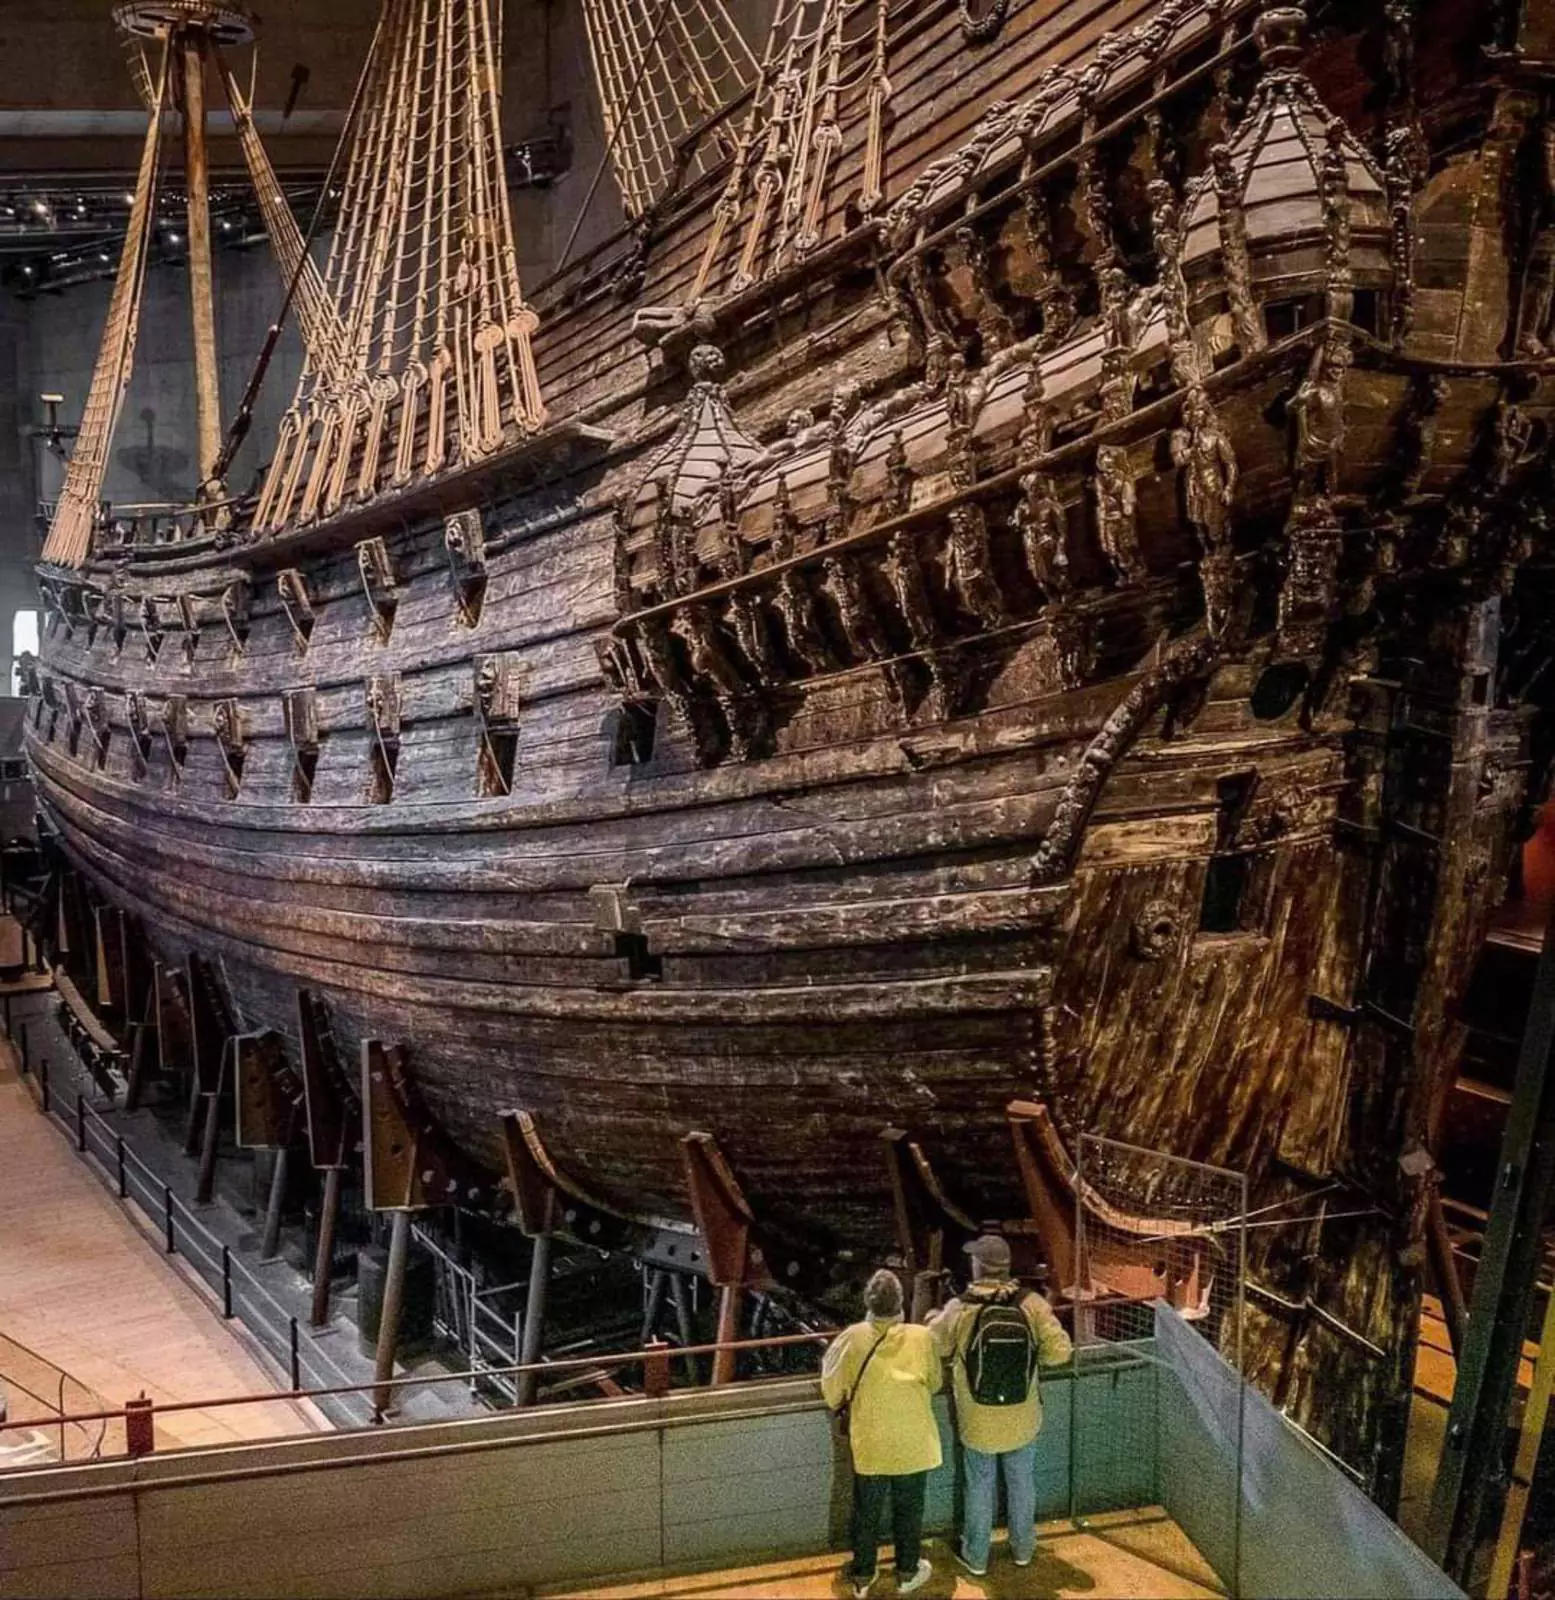 Шведский военный корабль, затонувший в 1628 году. Он был поднят со дна моря через 333 года почти полностью невредимым, сейчас находится в музее в Стокгольме.